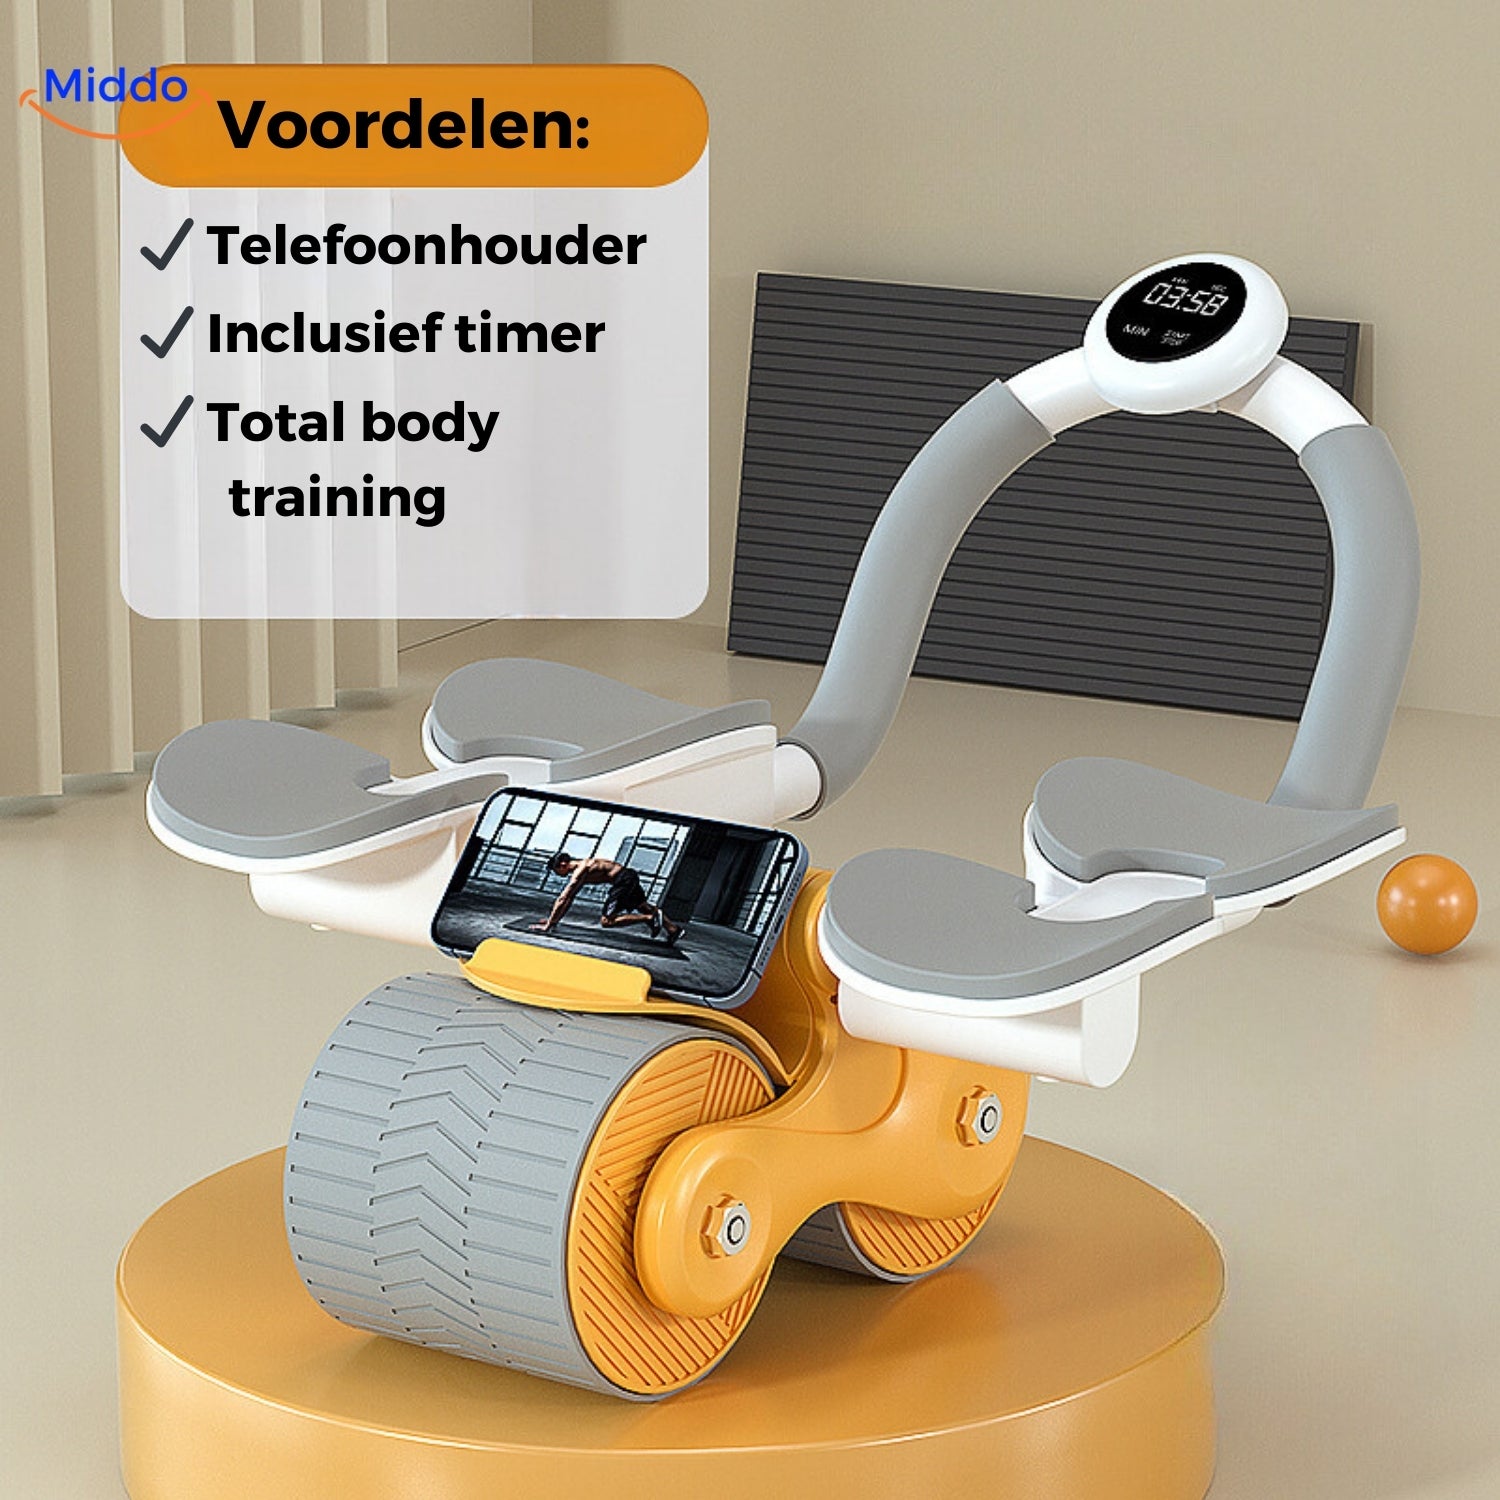 Oranje Abwheel pro buikspier trainer met telefoonhouder en timer van Middo.nl